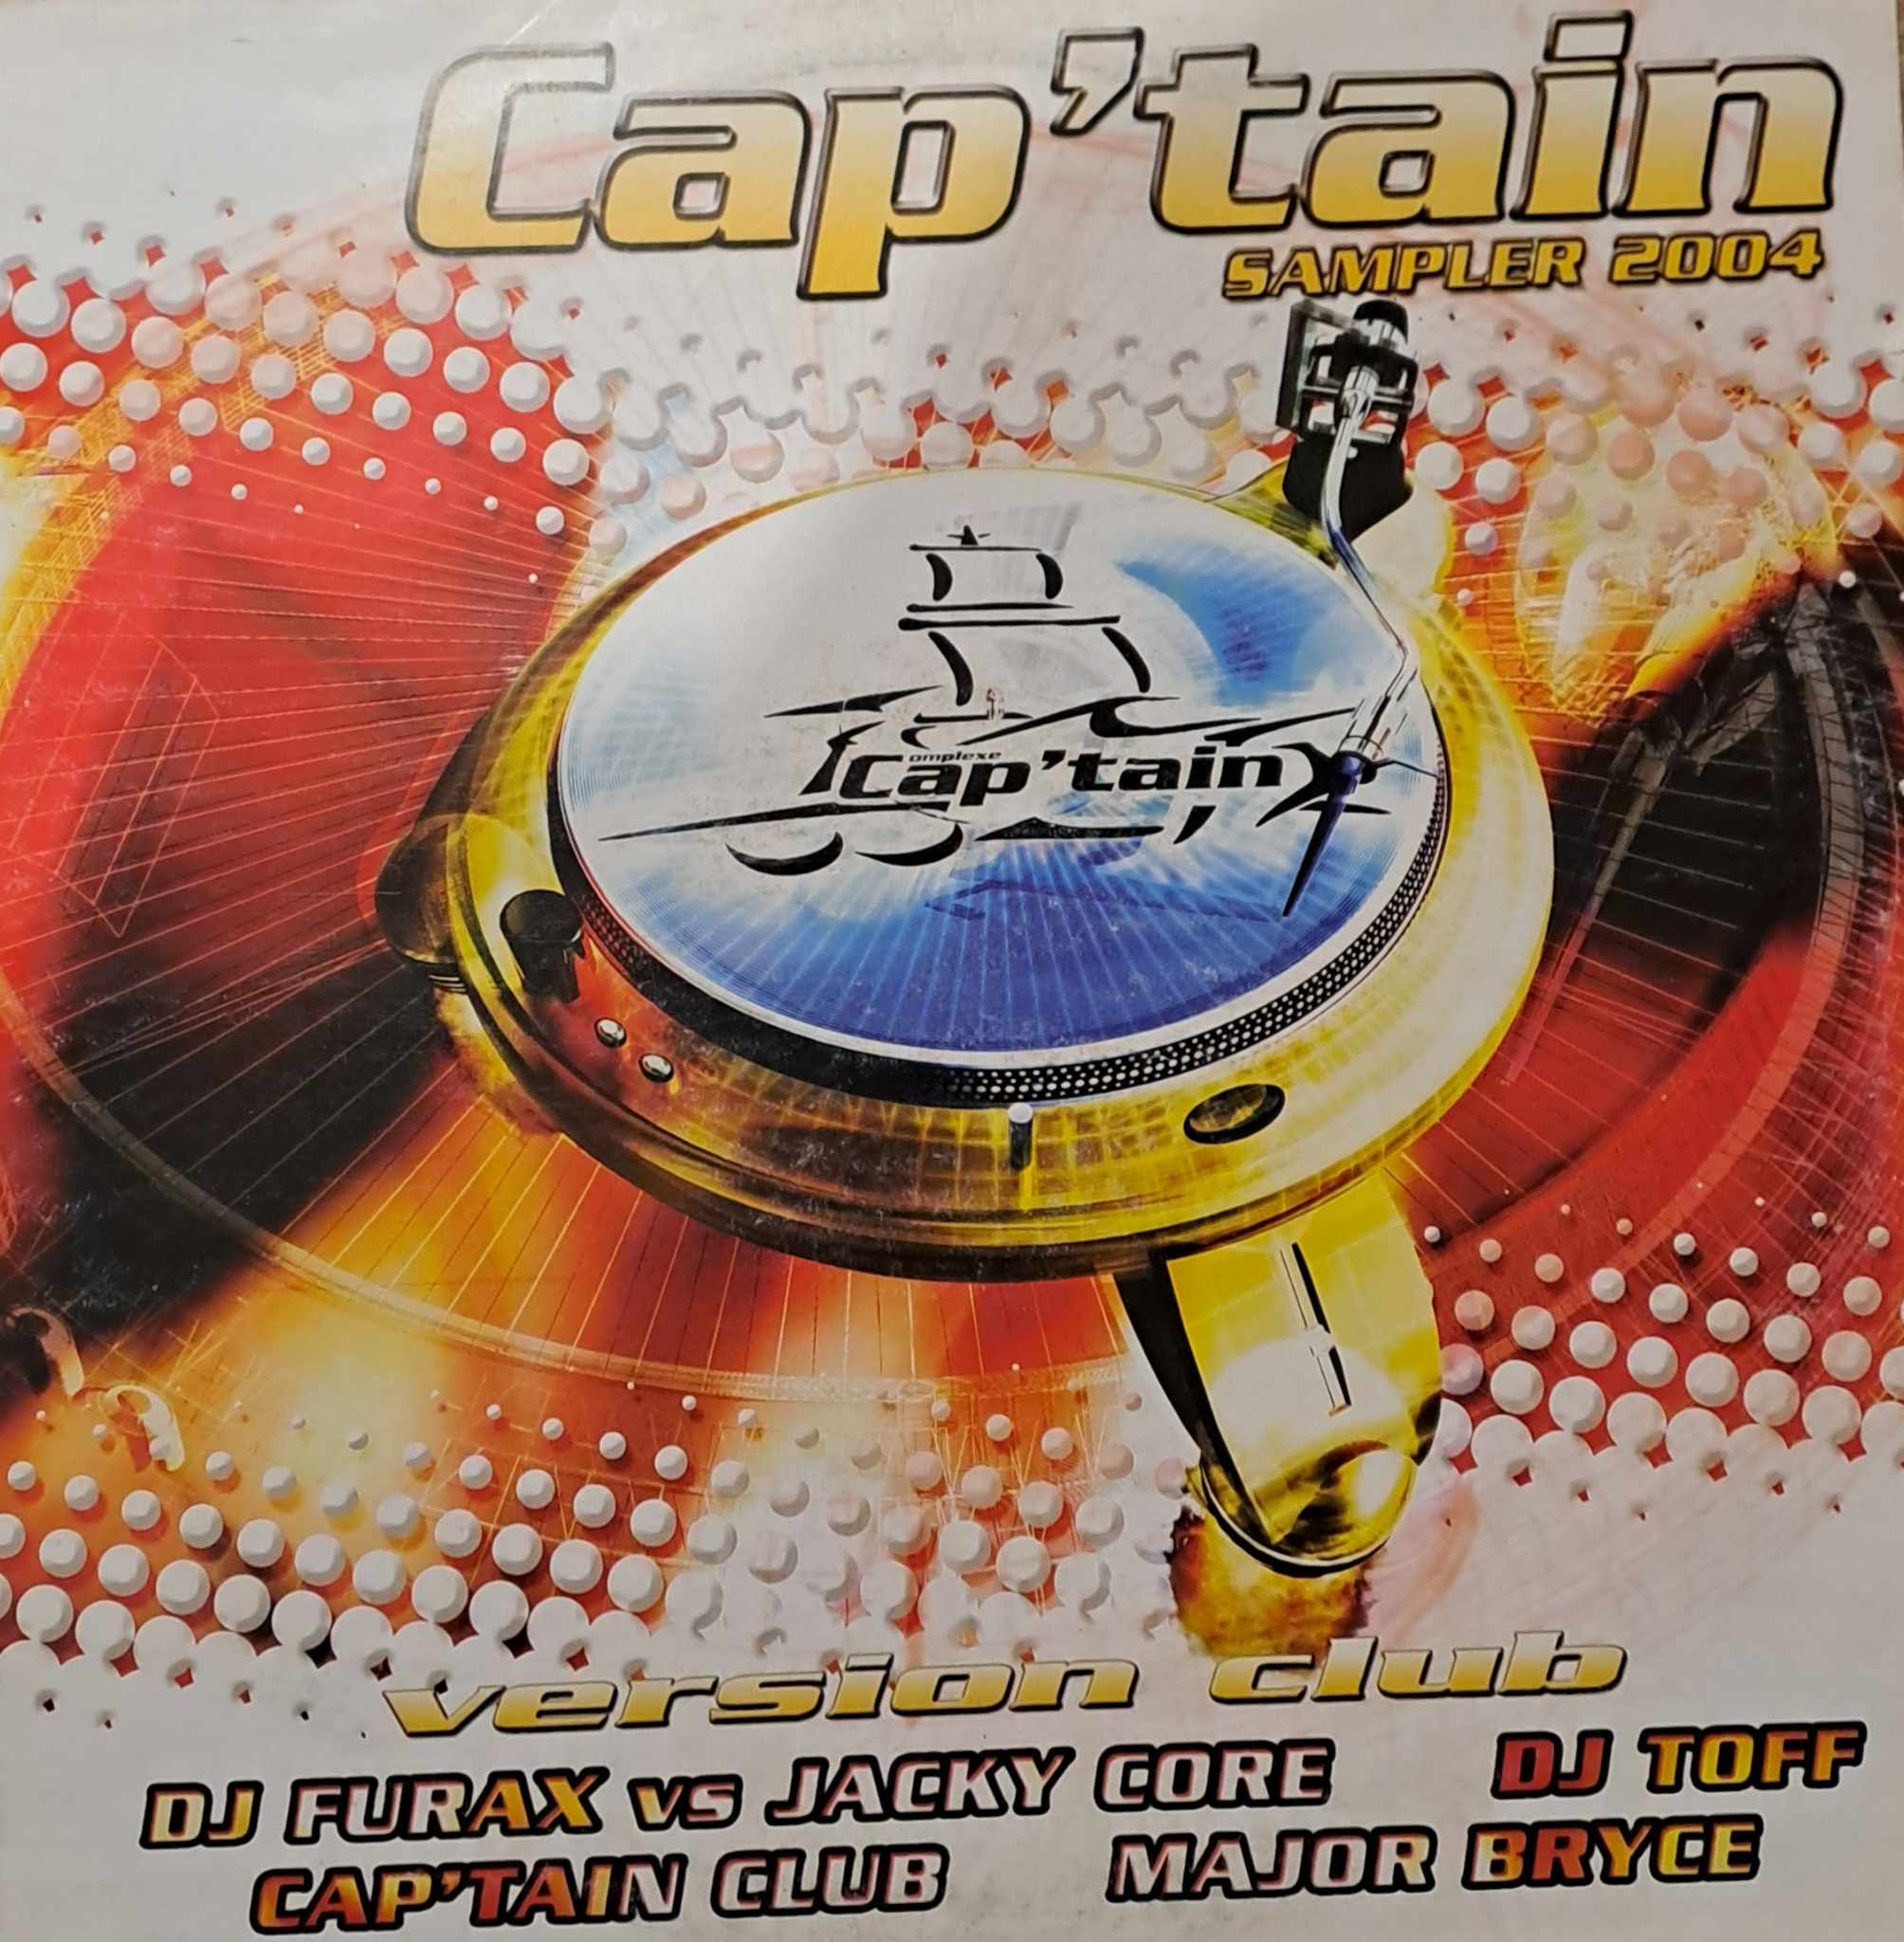 Cap'tain Sampler 2004 - vinyle Hard House